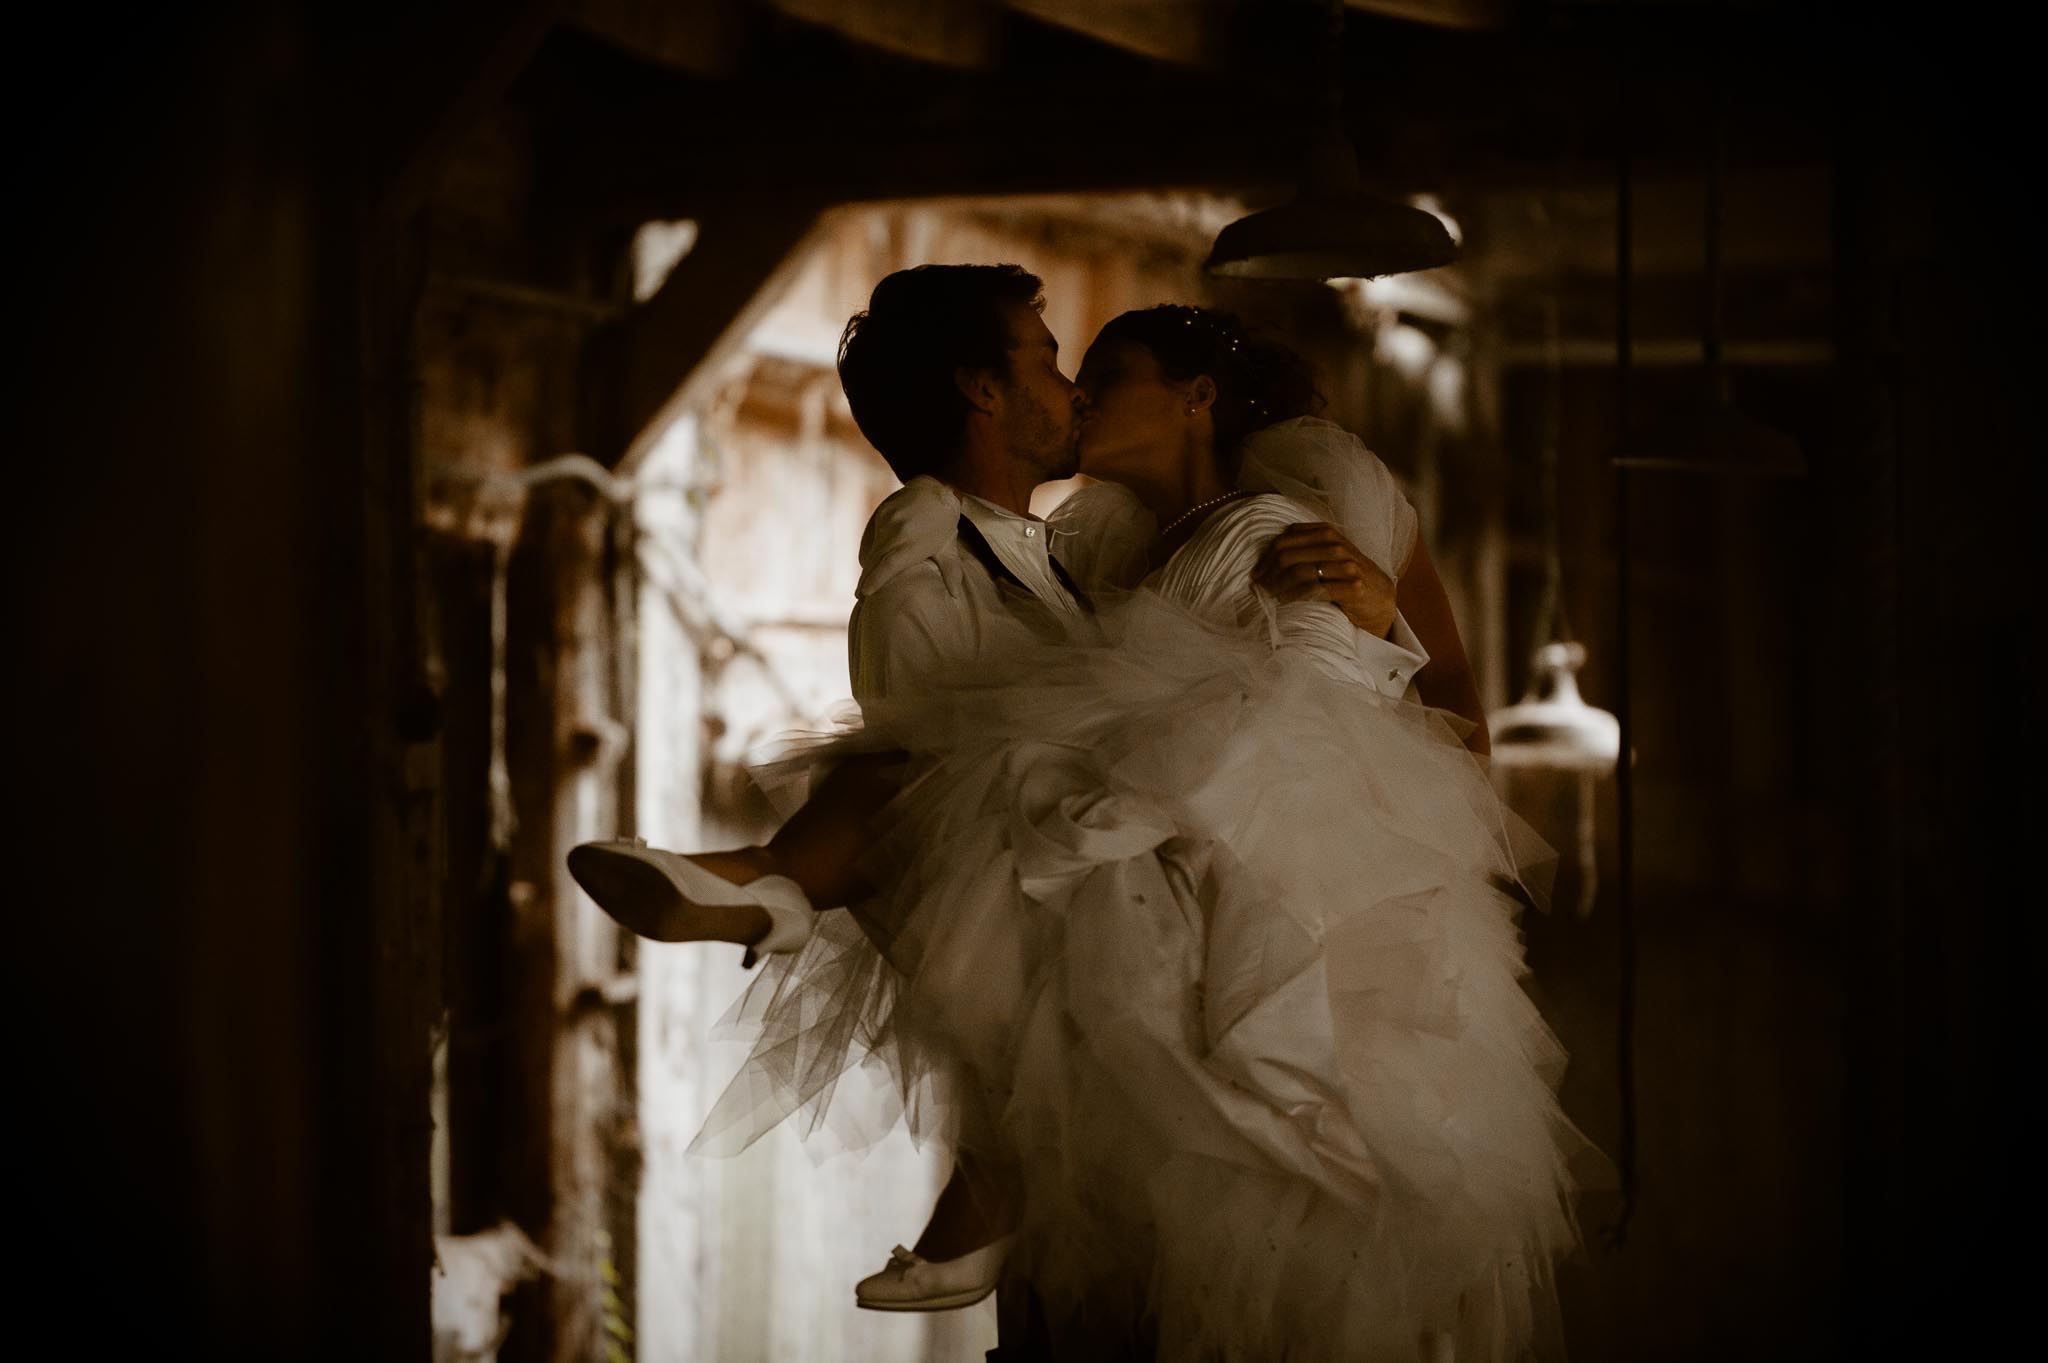 Séance couple après mariage poétique & romantique dans une friche pré-industrielle près de Amiens par Geoffrey Arnoldy photographe